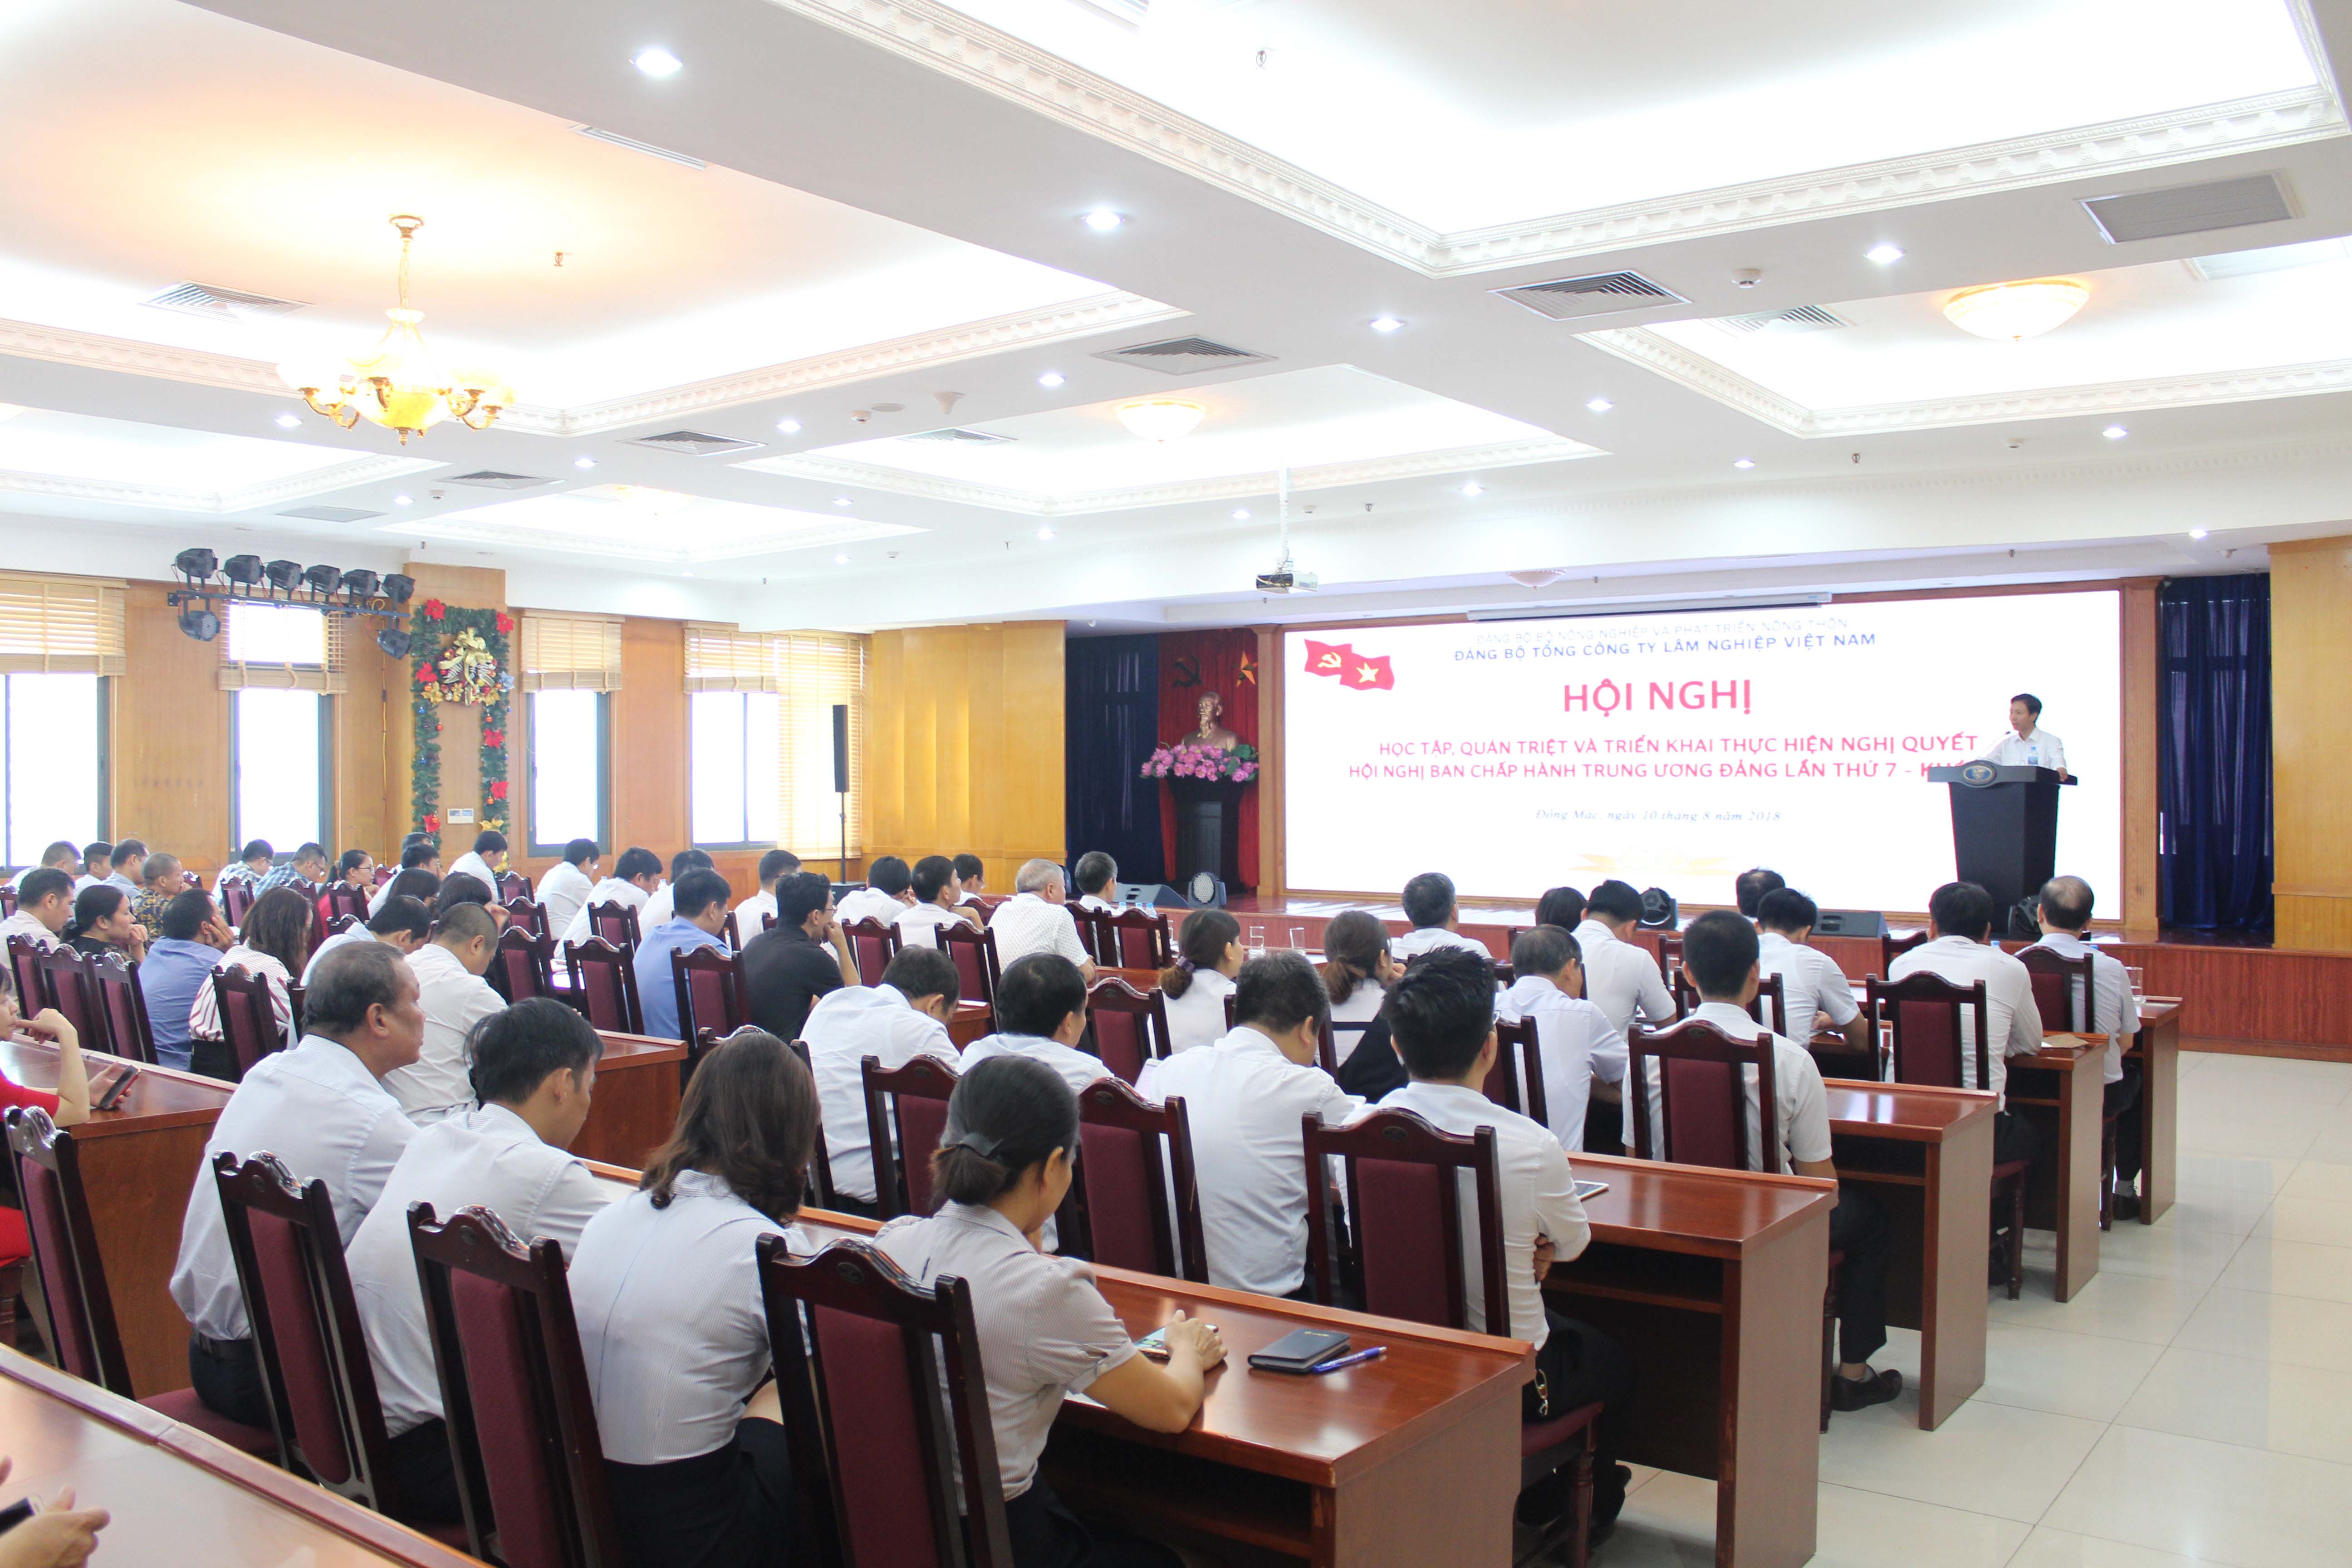 Đảng bộ Tổng công ty Lâm nghiệp Việt Nam tổ chức Hội nghị học tập, quán triệt và triển khai thực hiện NQTW7 khóa XII